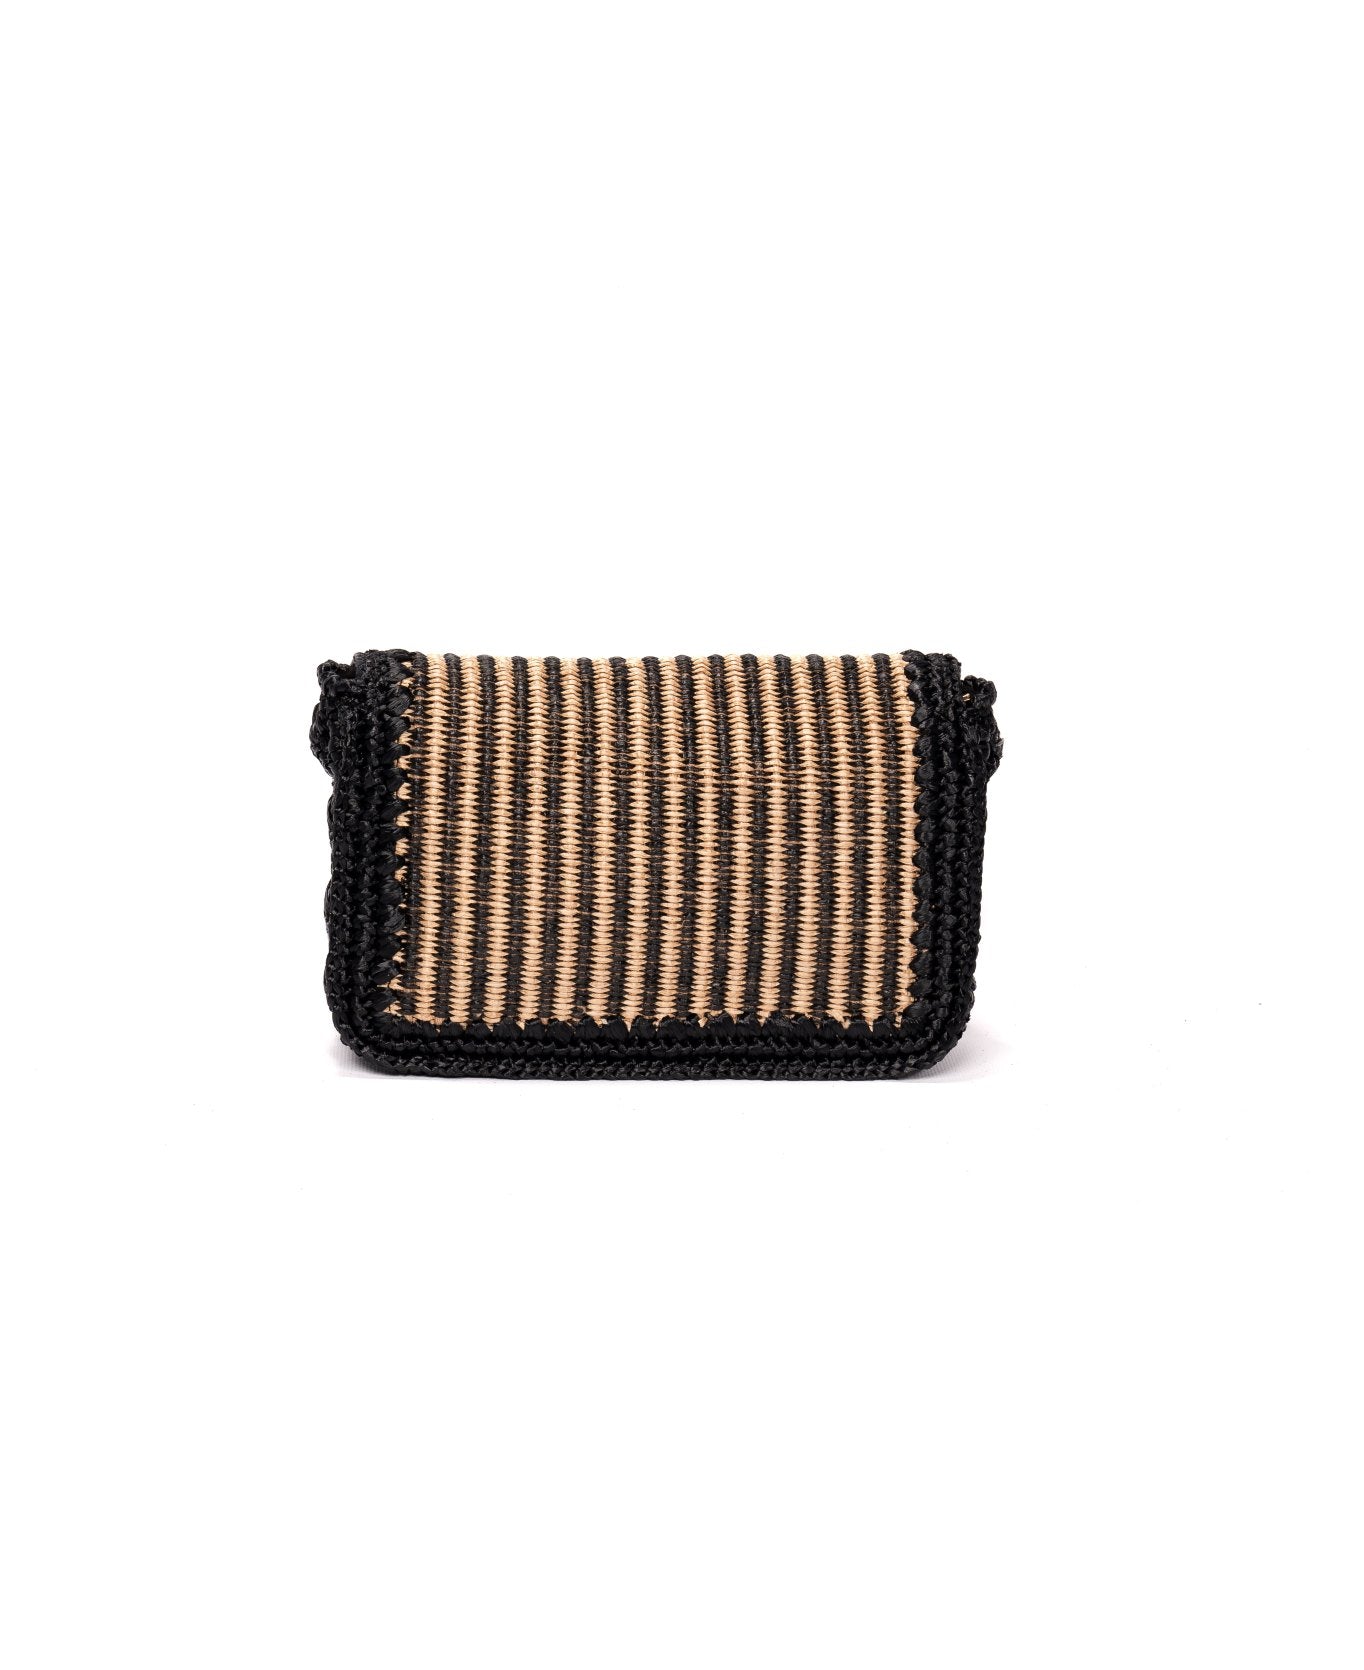 Raffia Bag - The Ginerva Stripes Black & Natural